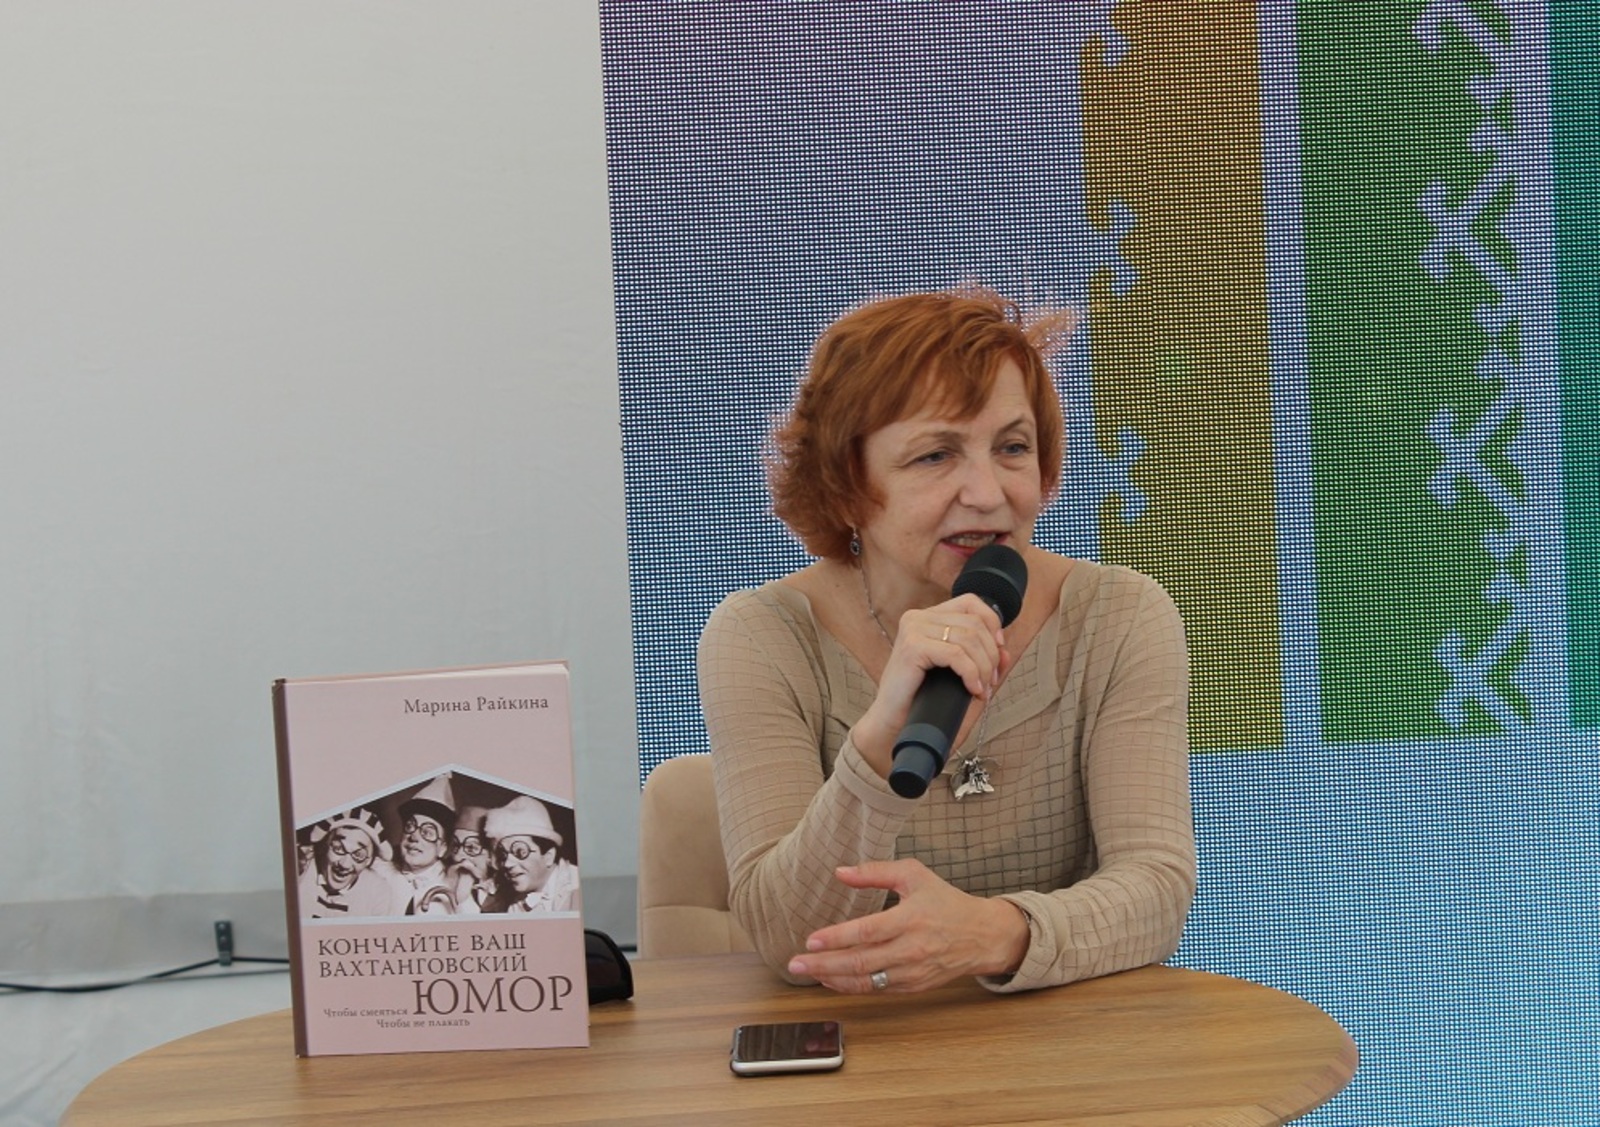 Марина Райкина: «Я впервые в Уфе, и я счастлива»